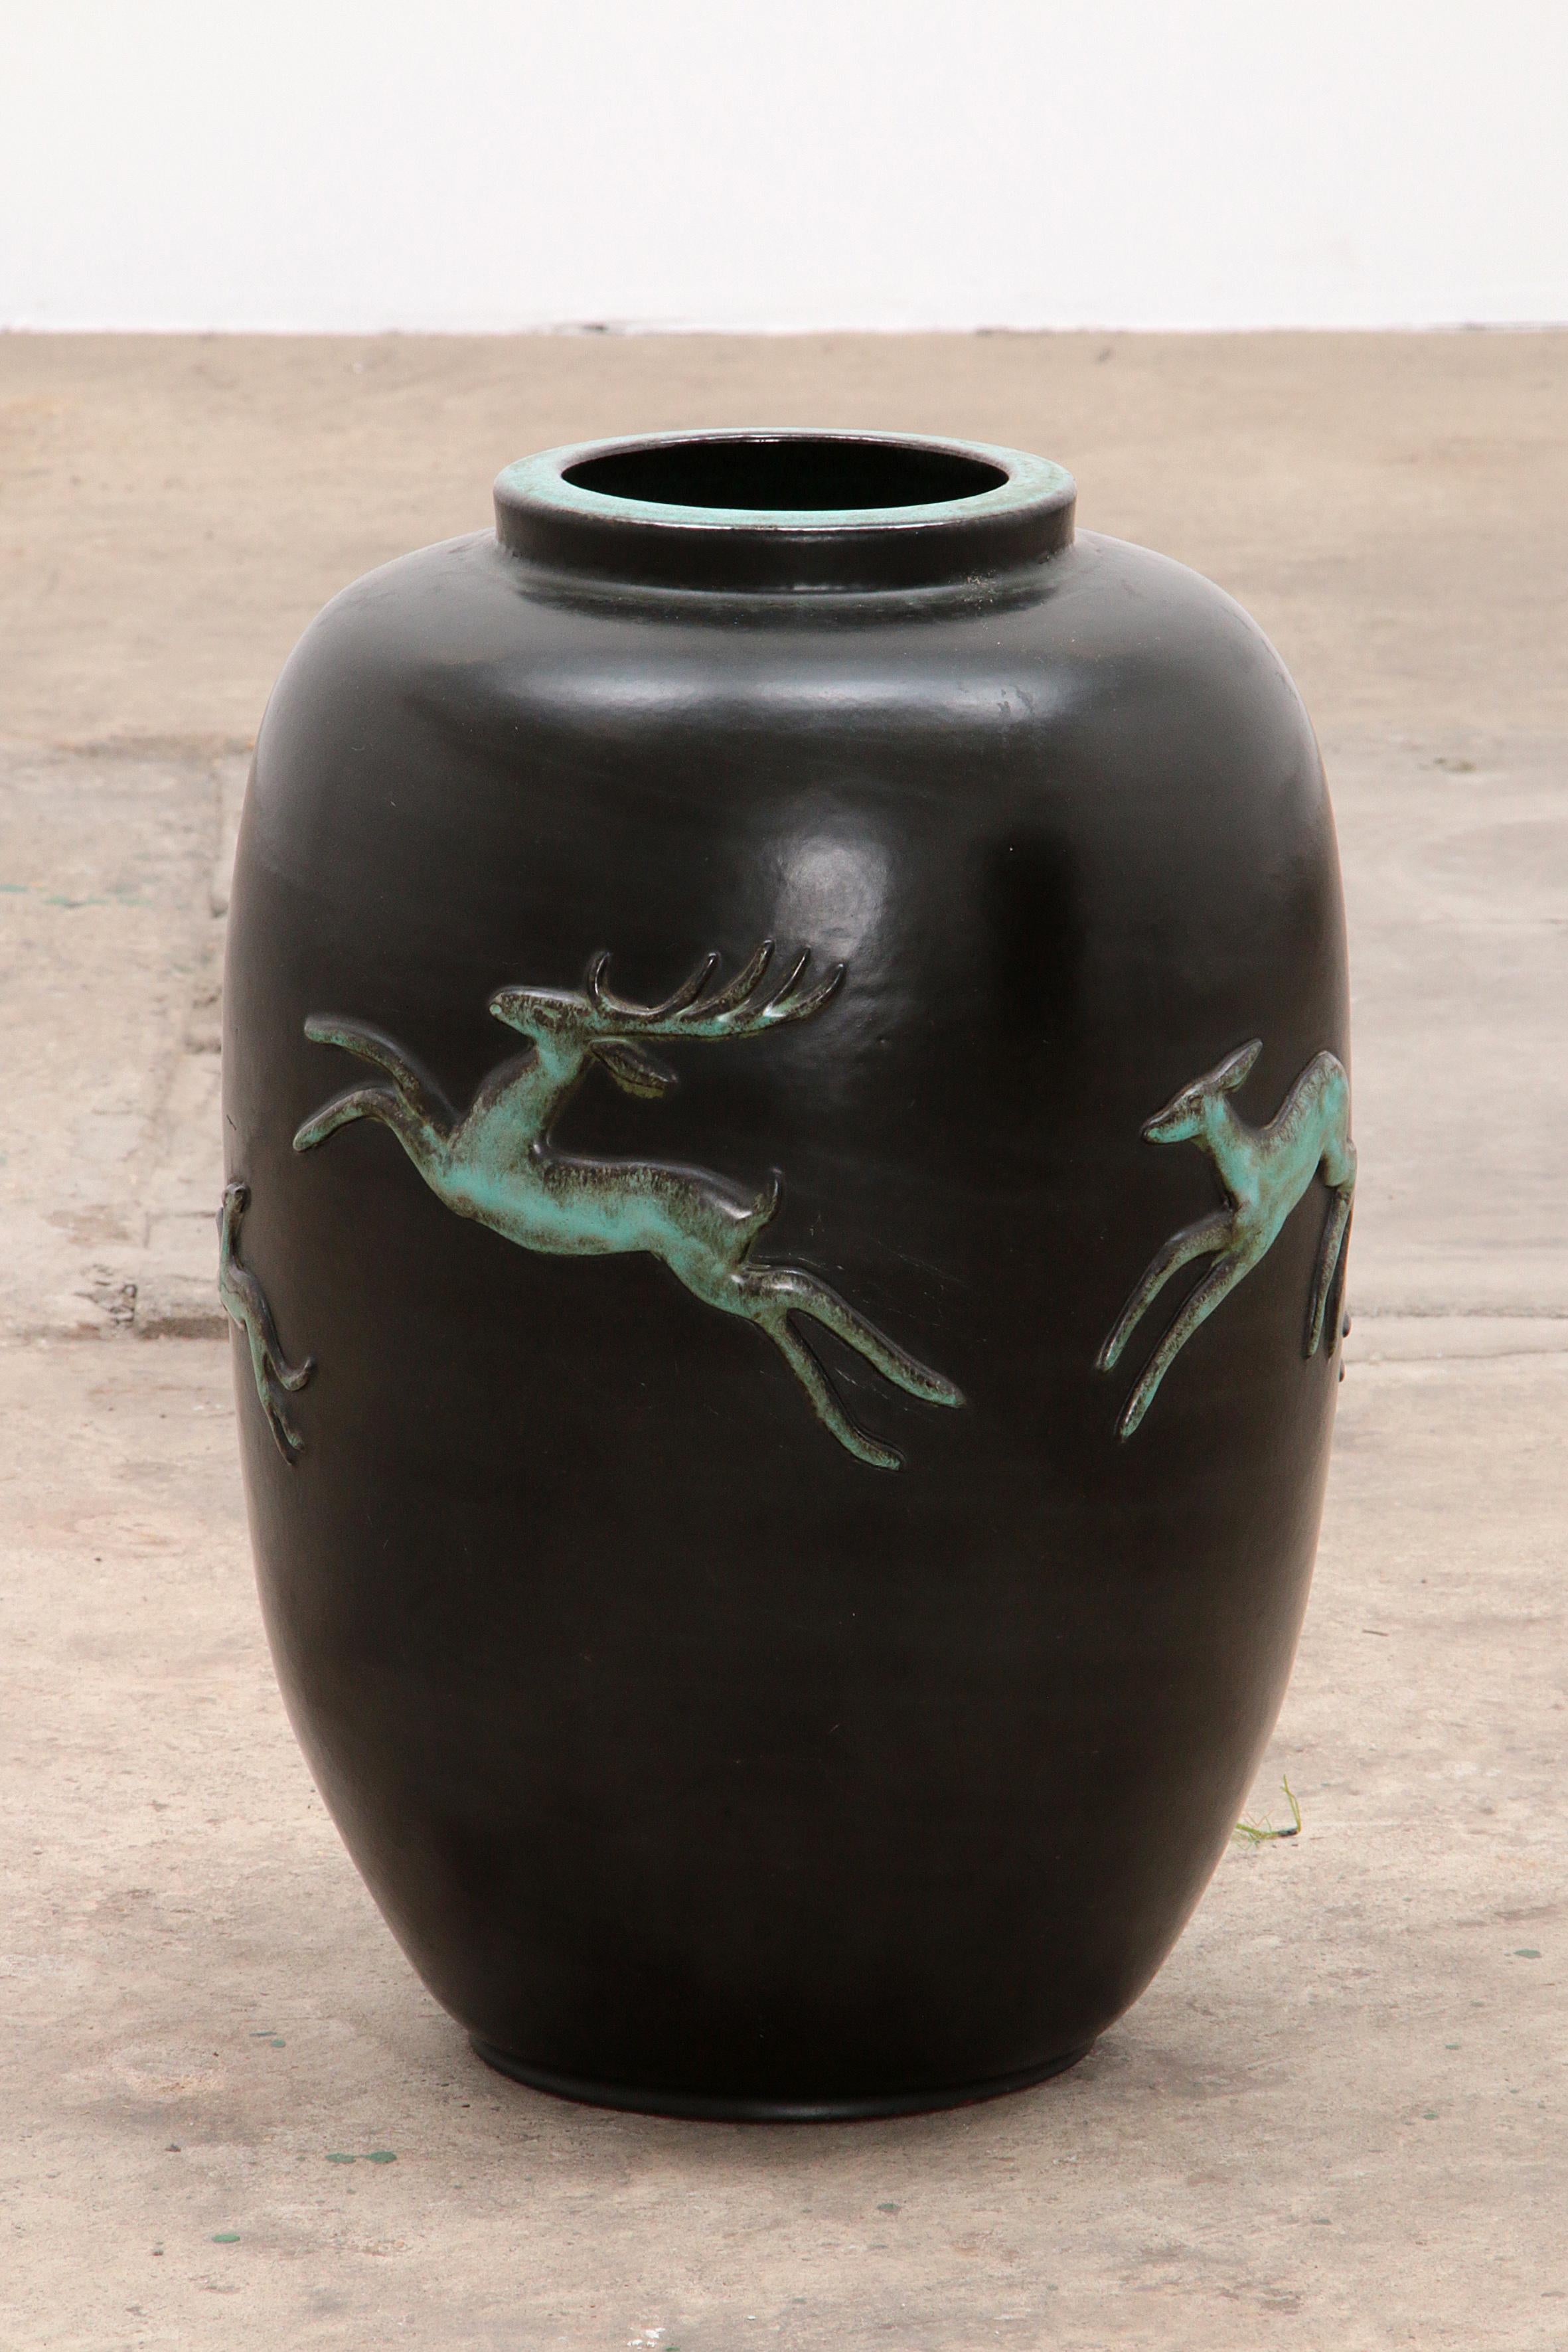 Große glasierte schwarz-grüne Terrakotta-Vase aus den 1950er Jahren mit einem Hirsch im Flachrelief von Ugo Zaccagnini & Son.s. Schönes, einzigartiges Stück in sehr gutem Zustand.

Diese schöne Vase ist handgefertigt und glasiert mit mehreren